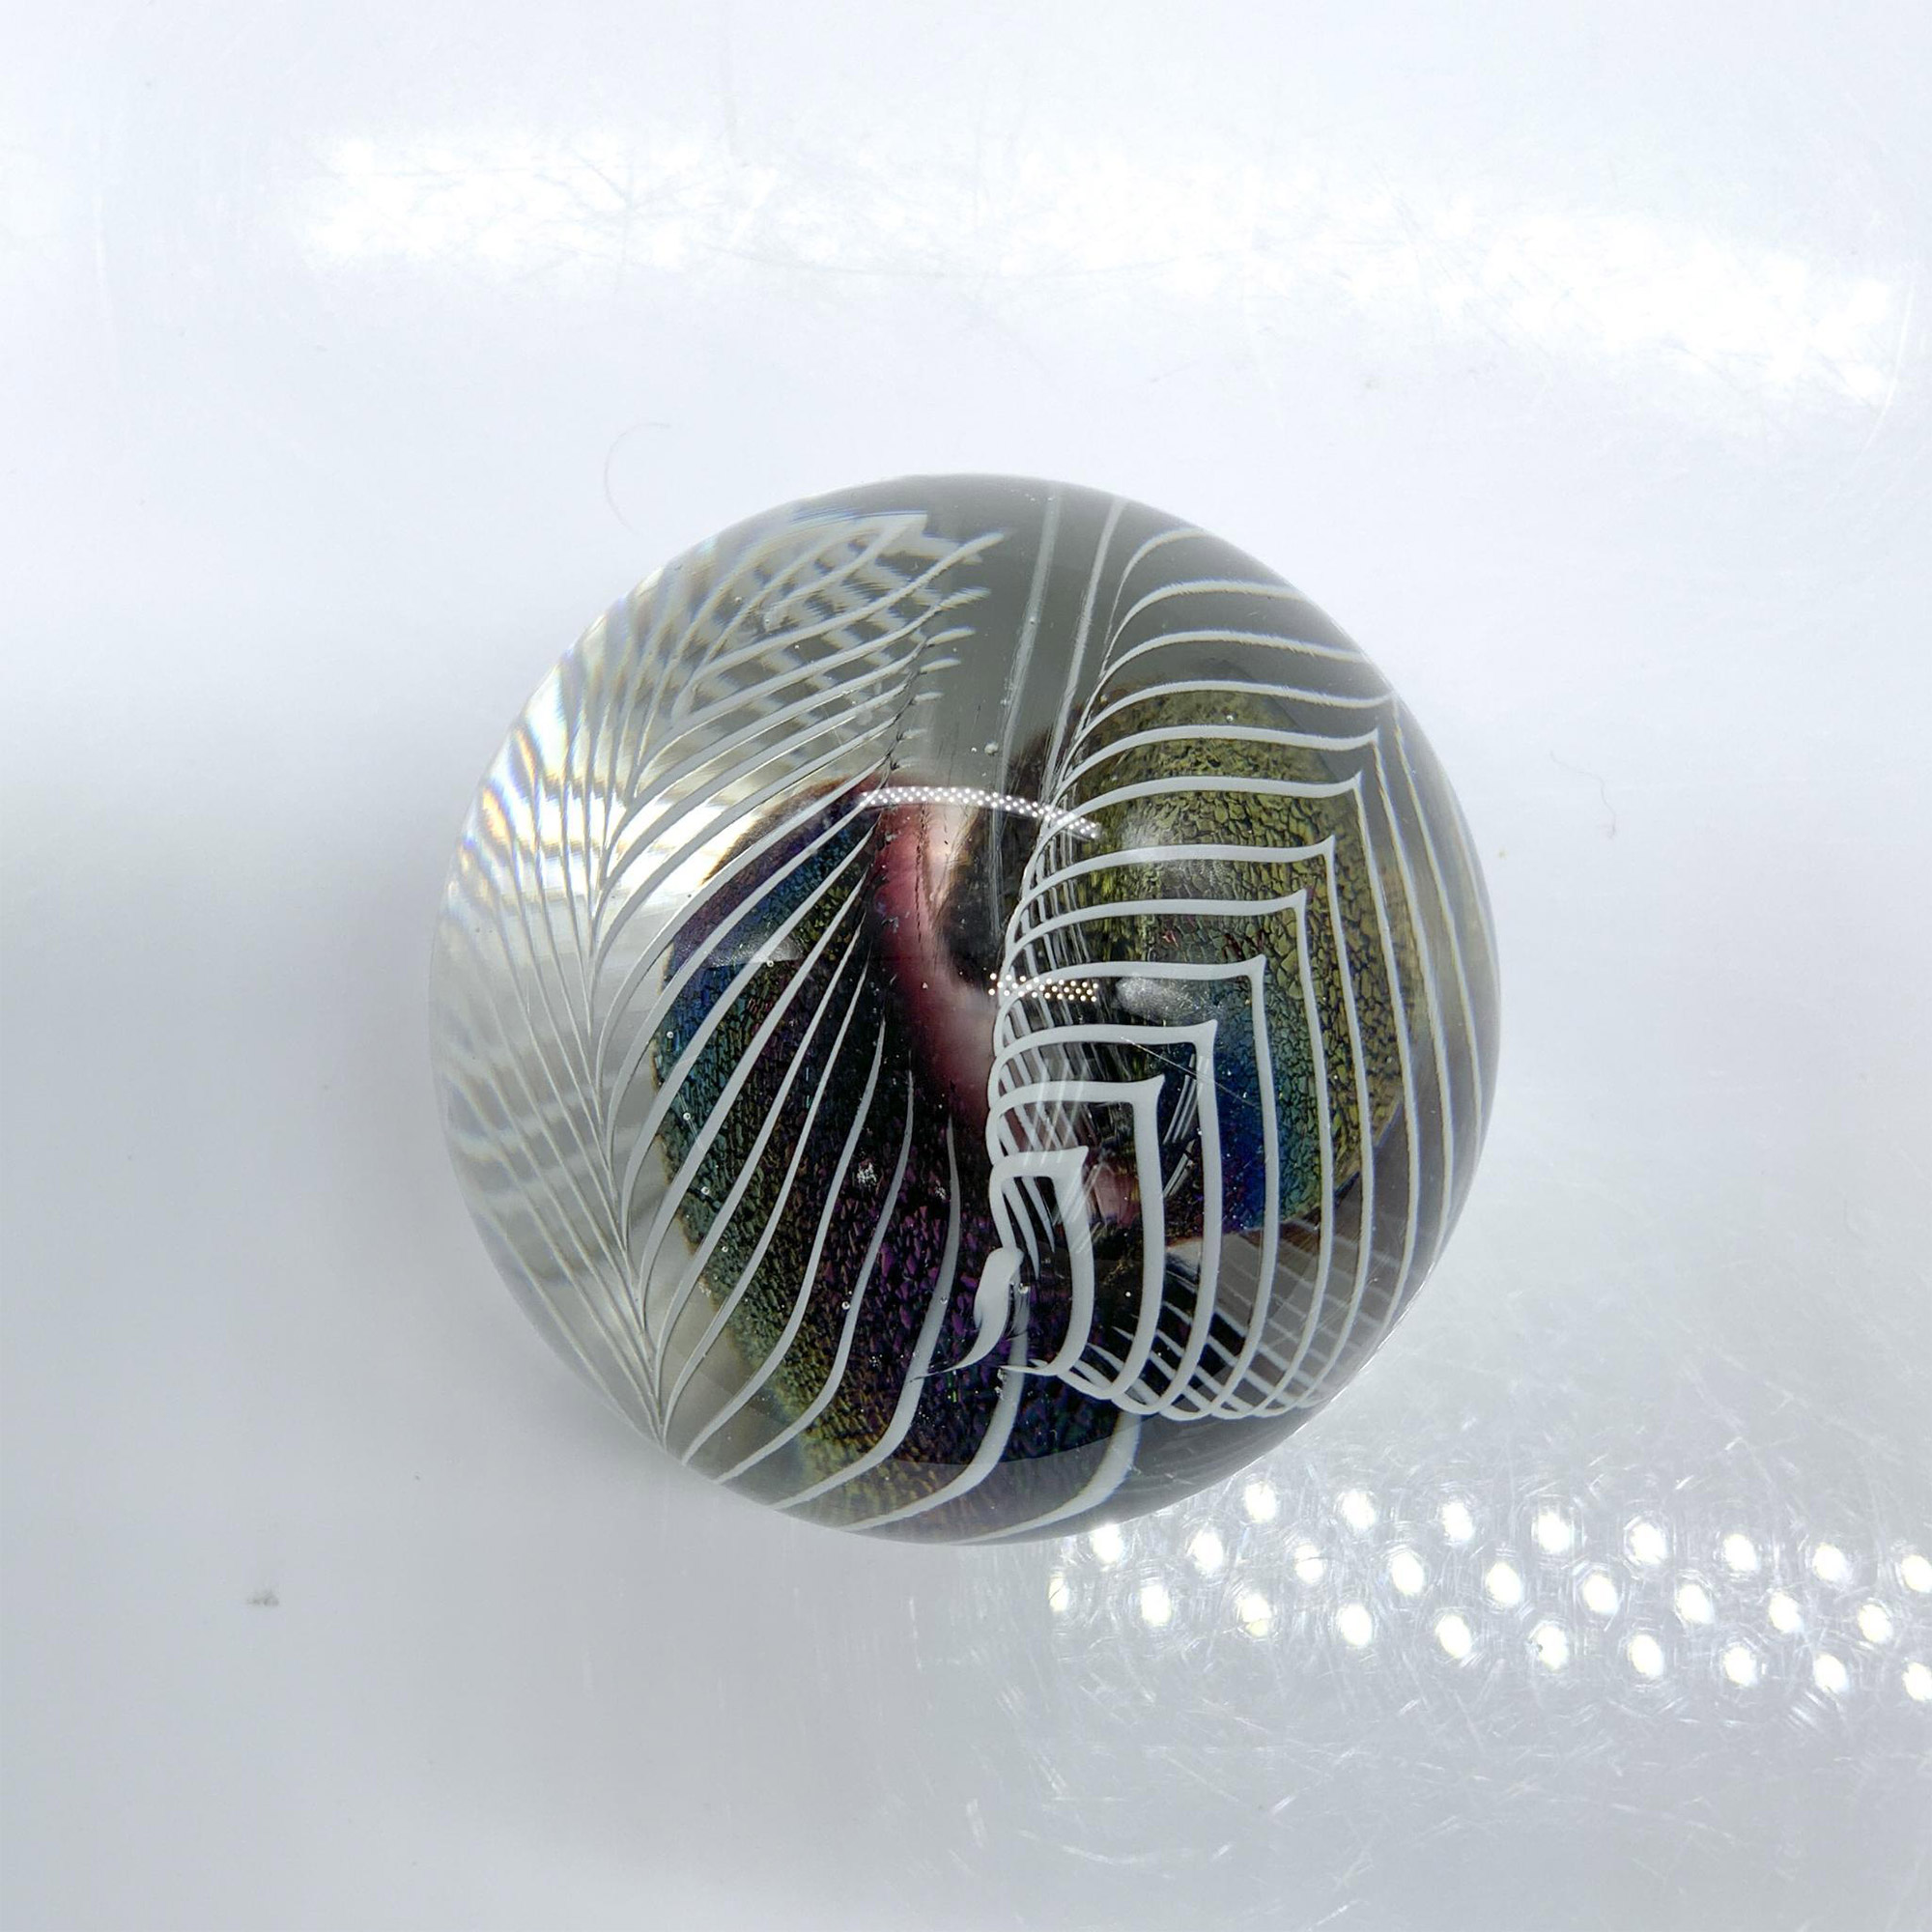 Robert Eickholt Iridescent Art Glass Paperweight, Signed - Image 3 of 5